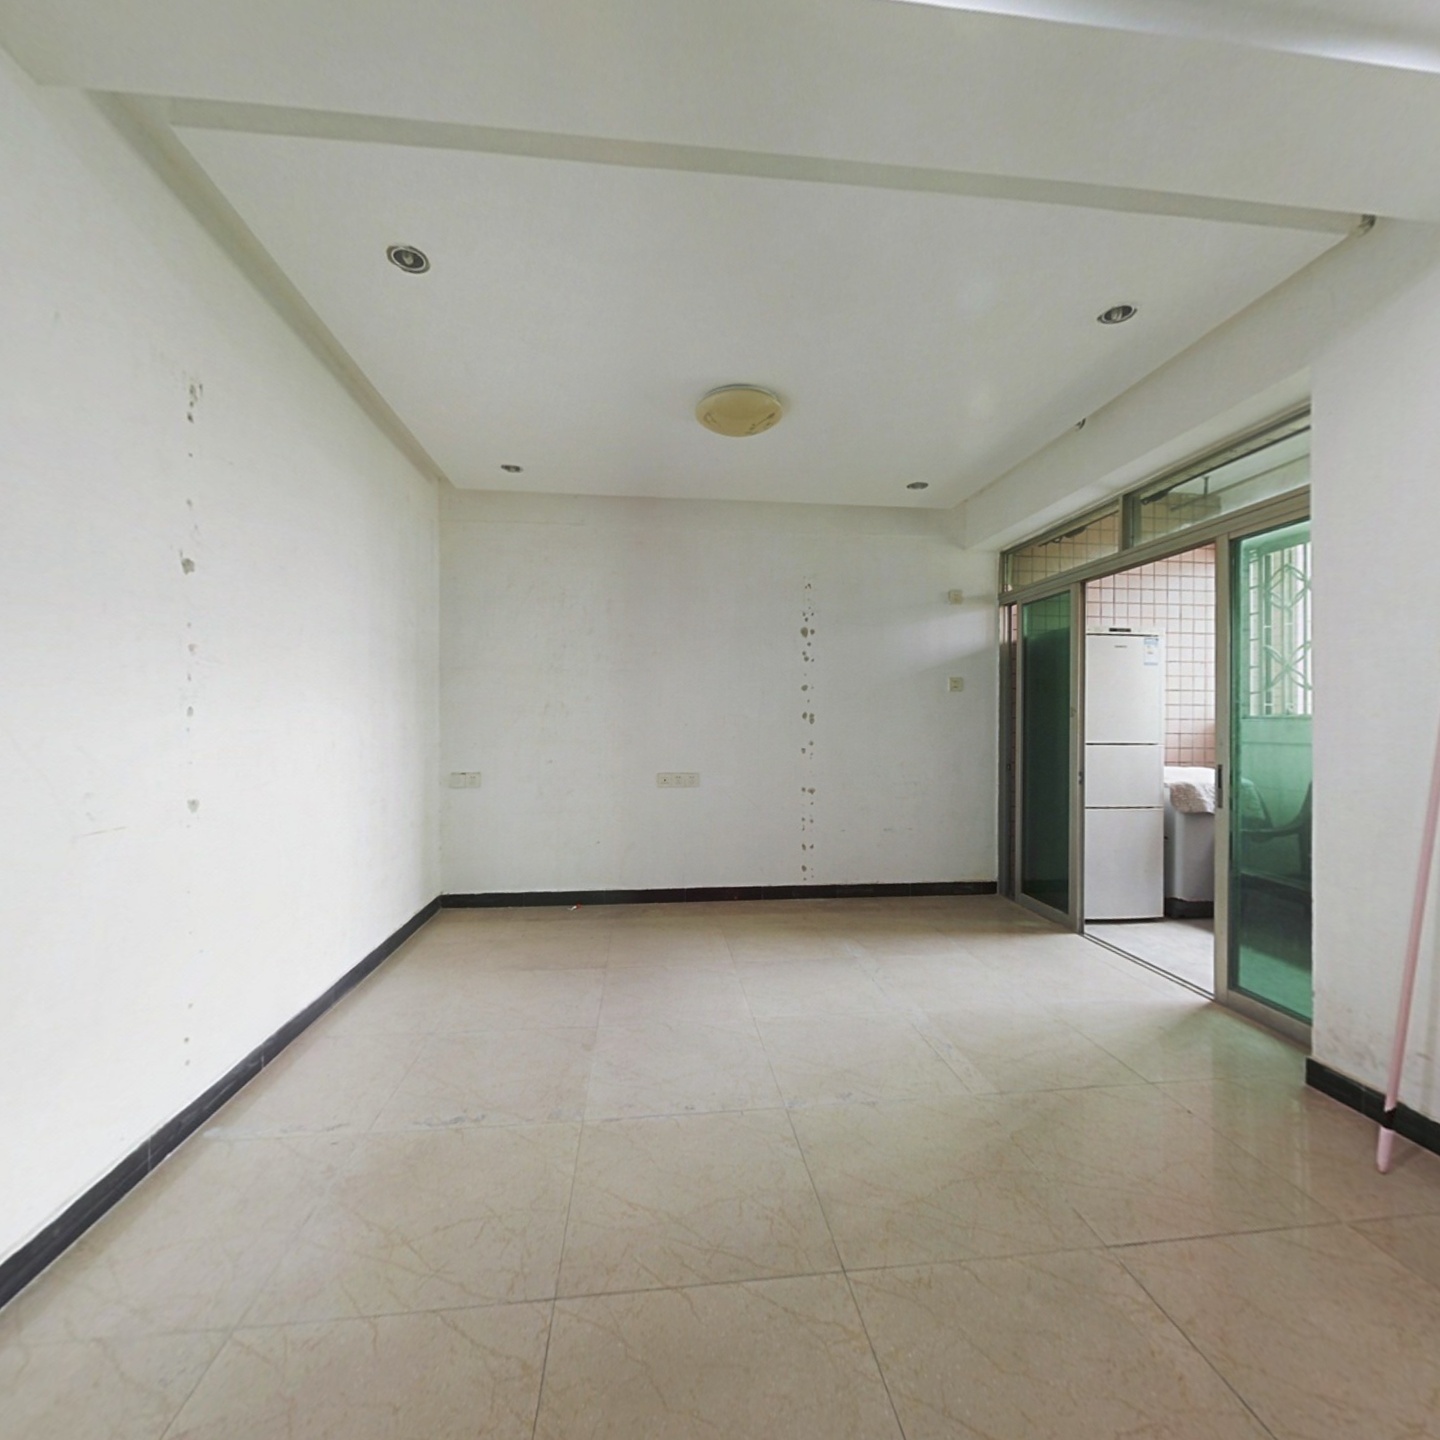 德政中路 康丽居电梯  正规两房一厅  环境安静舒适